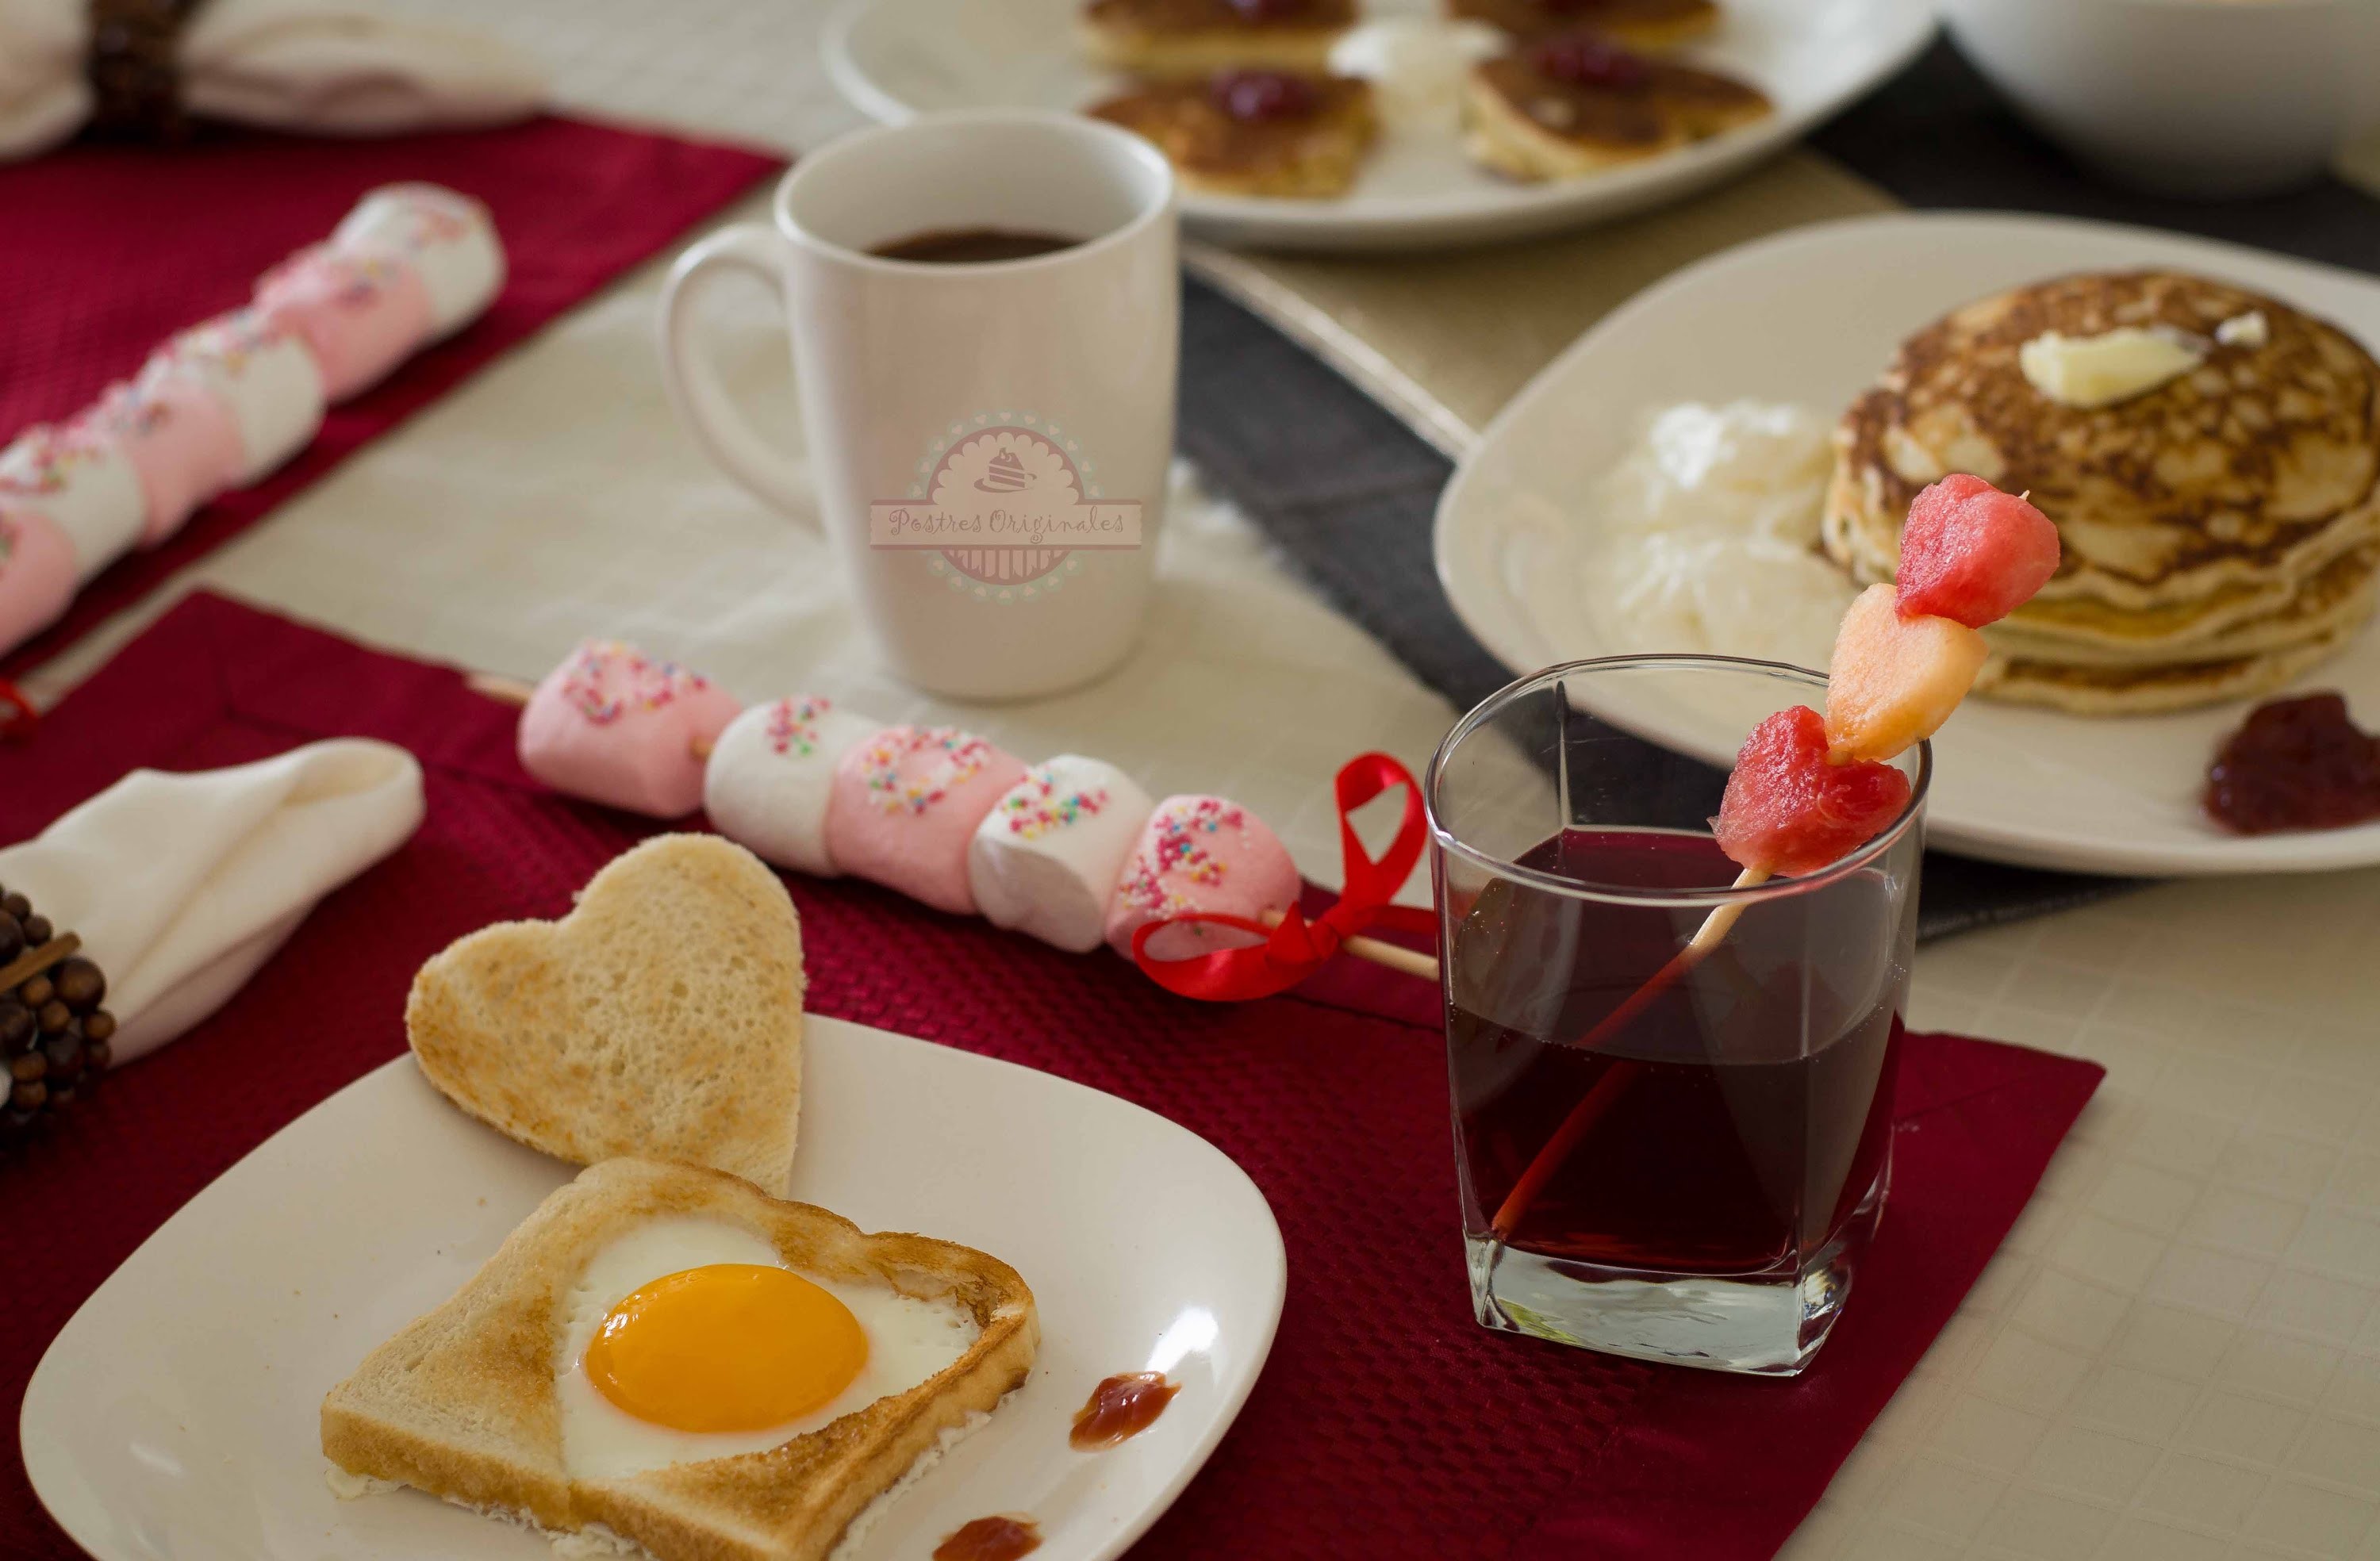 Desayuno Romántico  - Desayuno para Enamorar